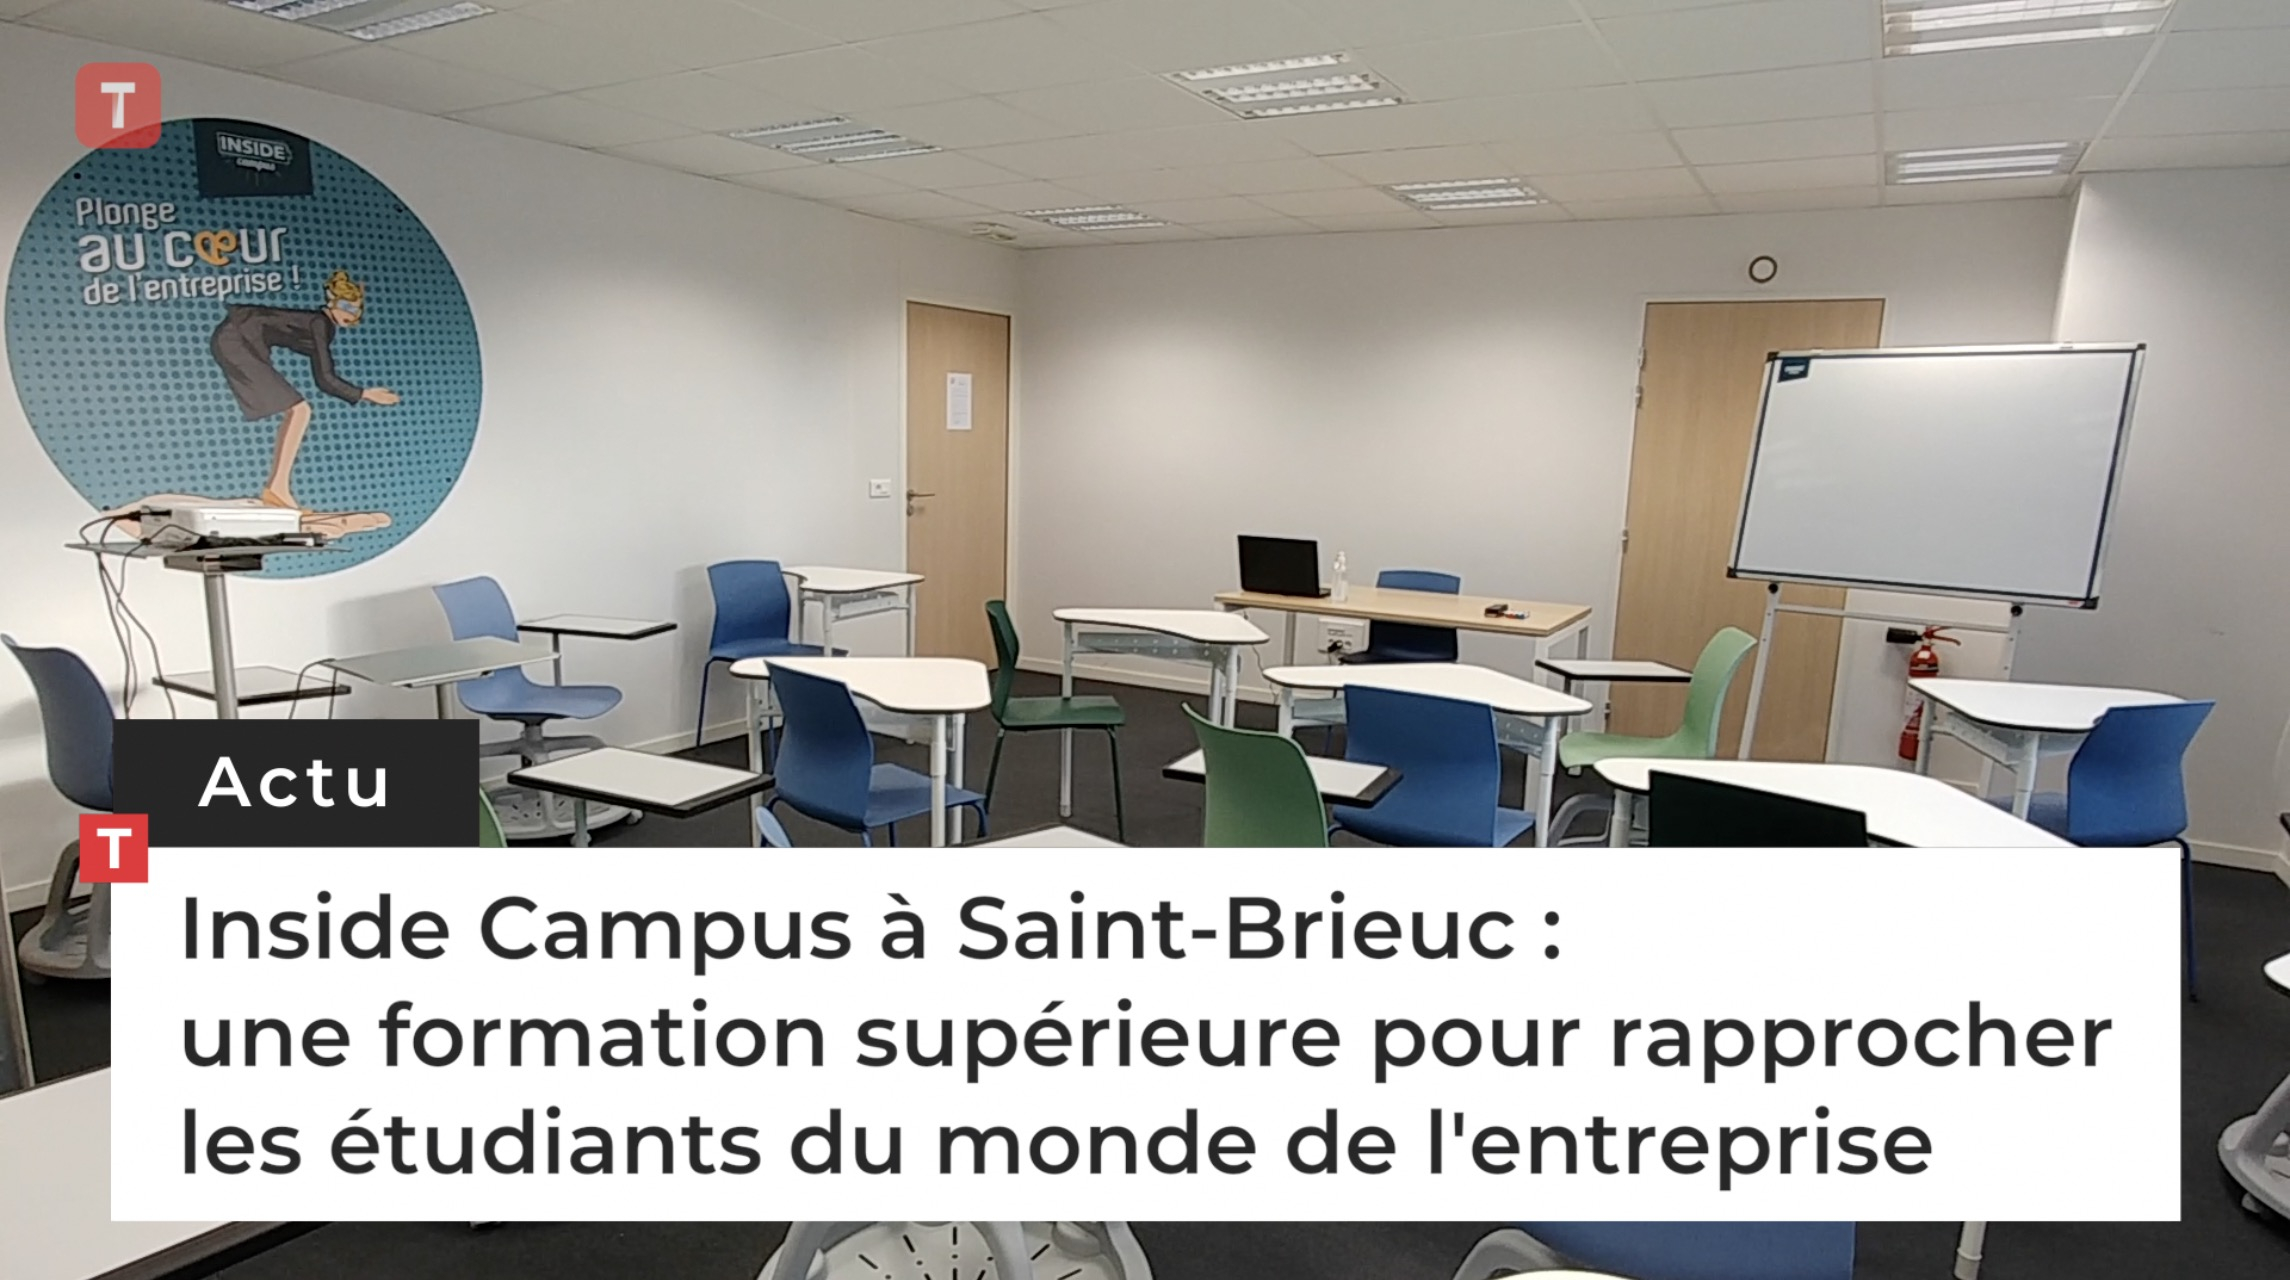 Inside Campus à Saint-Brieuc : une formation supérieure pour rapprocher les étudiants du monde de l'entreprise (Le Télégramme)